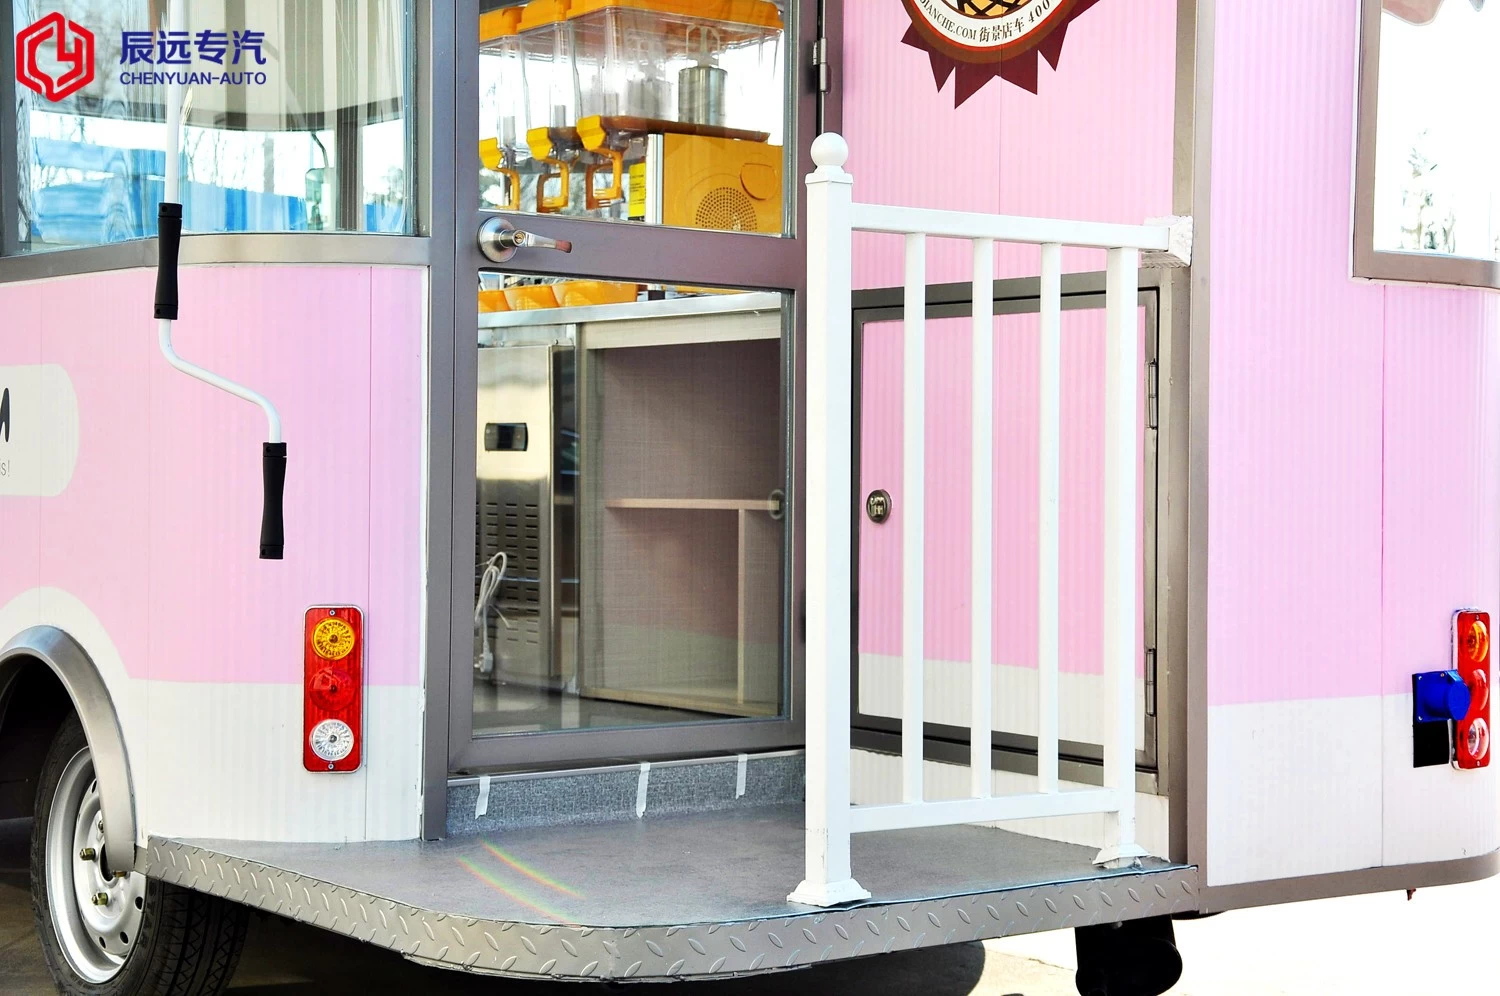 中国制造的流行款式移动冰淇淋车价格